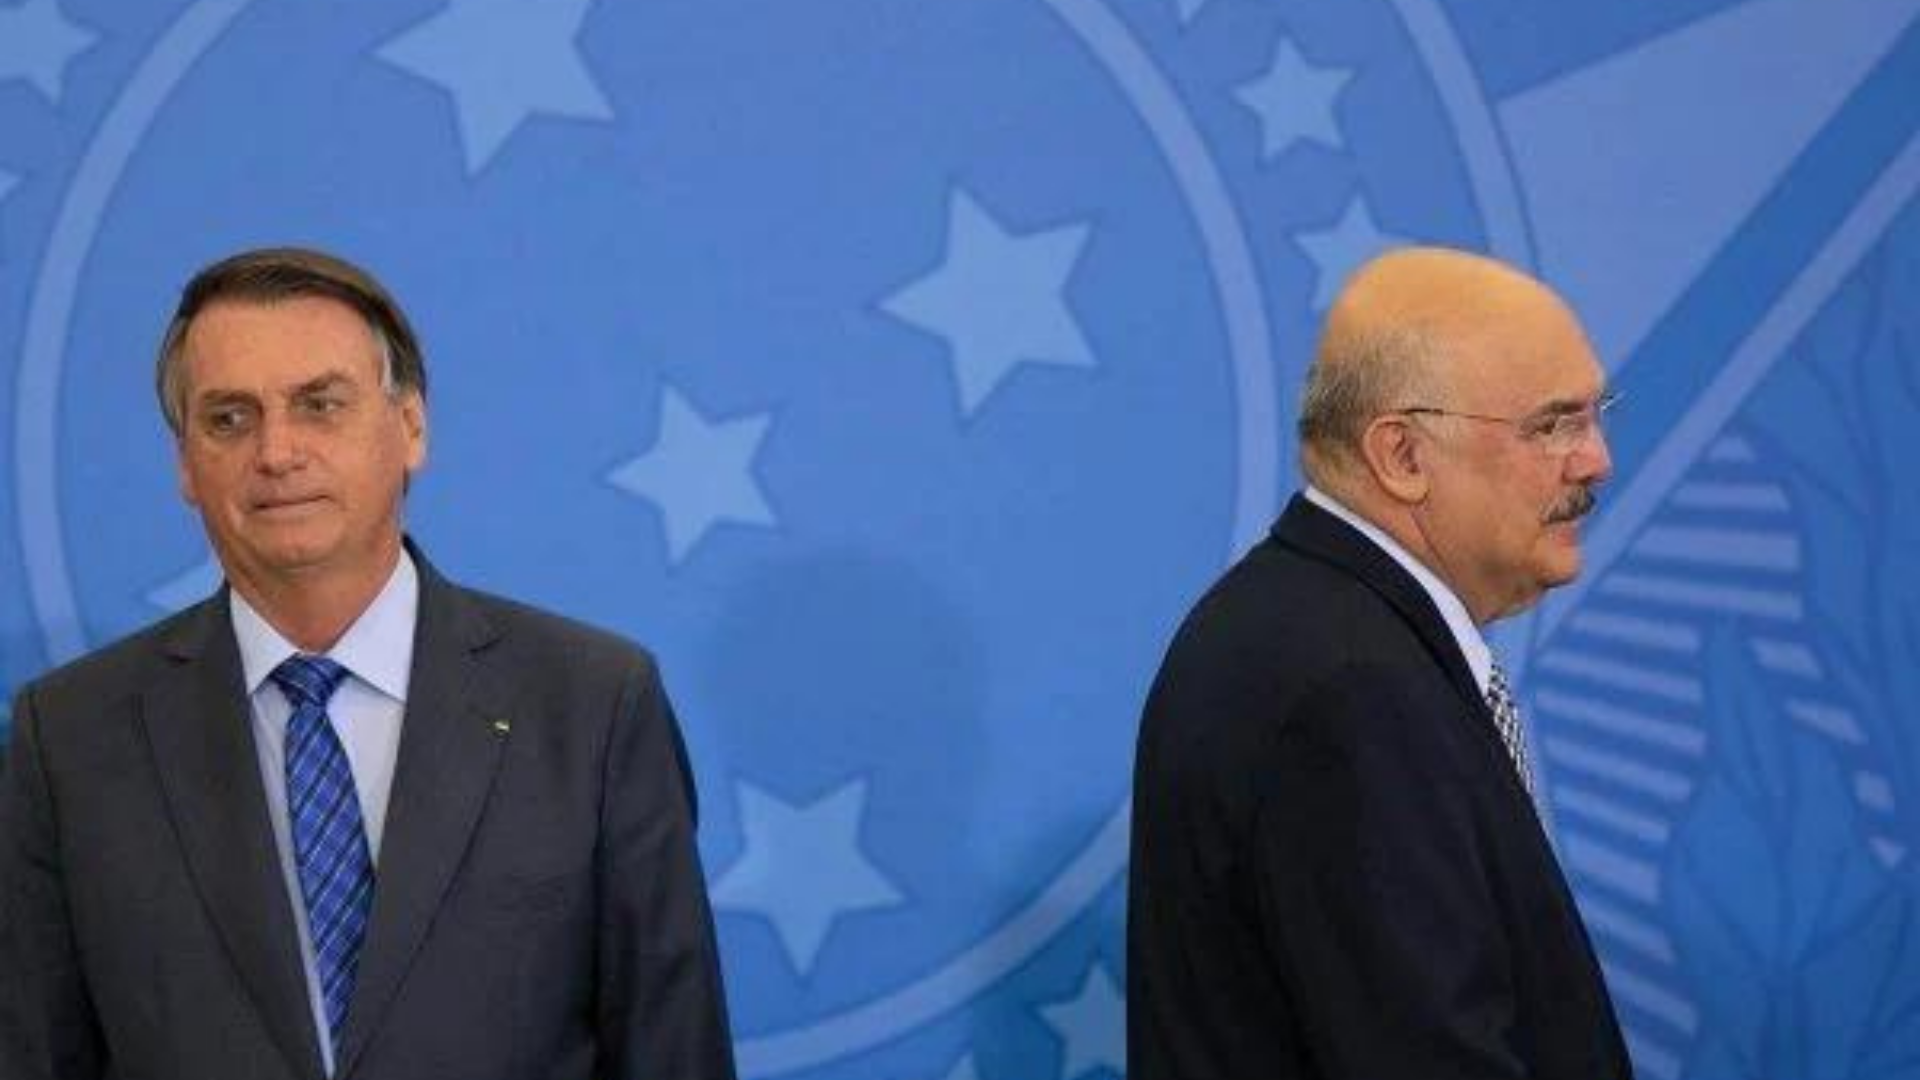 Internação de Bolsonaro ajuda a ofuscar crise no governo. Foto de Bolsonaro com olhar desconcertado e o ministro Milton Ribeiro de costas para ele. 